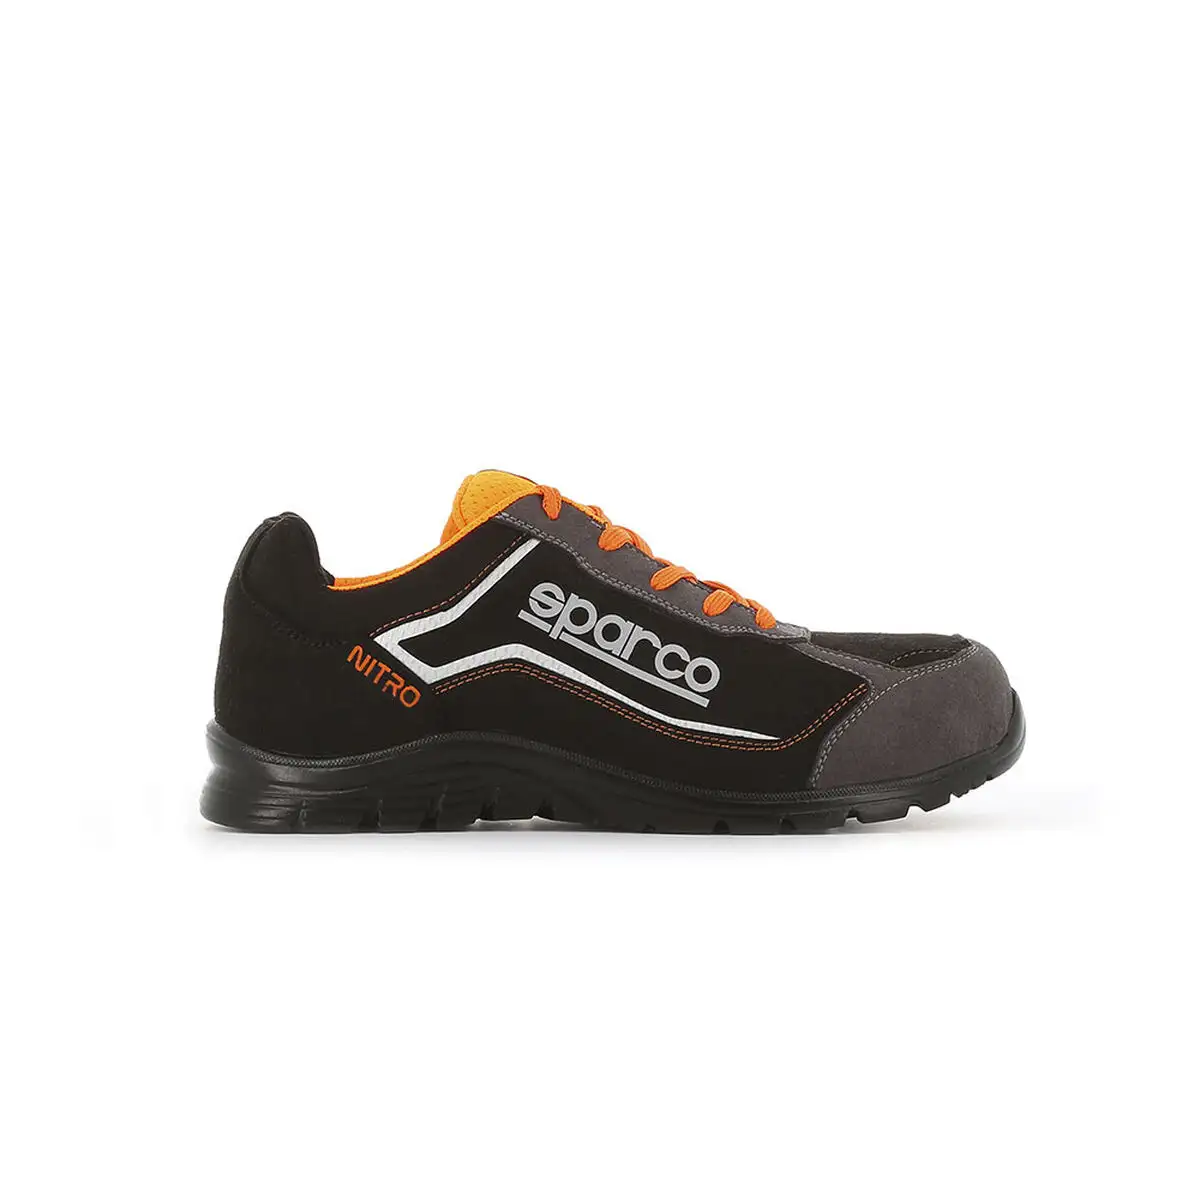 Chaussures de securite sparco nitro noir s3 src_6400. DIAYTAR SENEGAL - Où Votre Shopping Prend Vie. Explorez notre boutique en ligne pour trouver des articles qui vous ressemblent et qui ajoutent de l'éclat à votre quotidien.